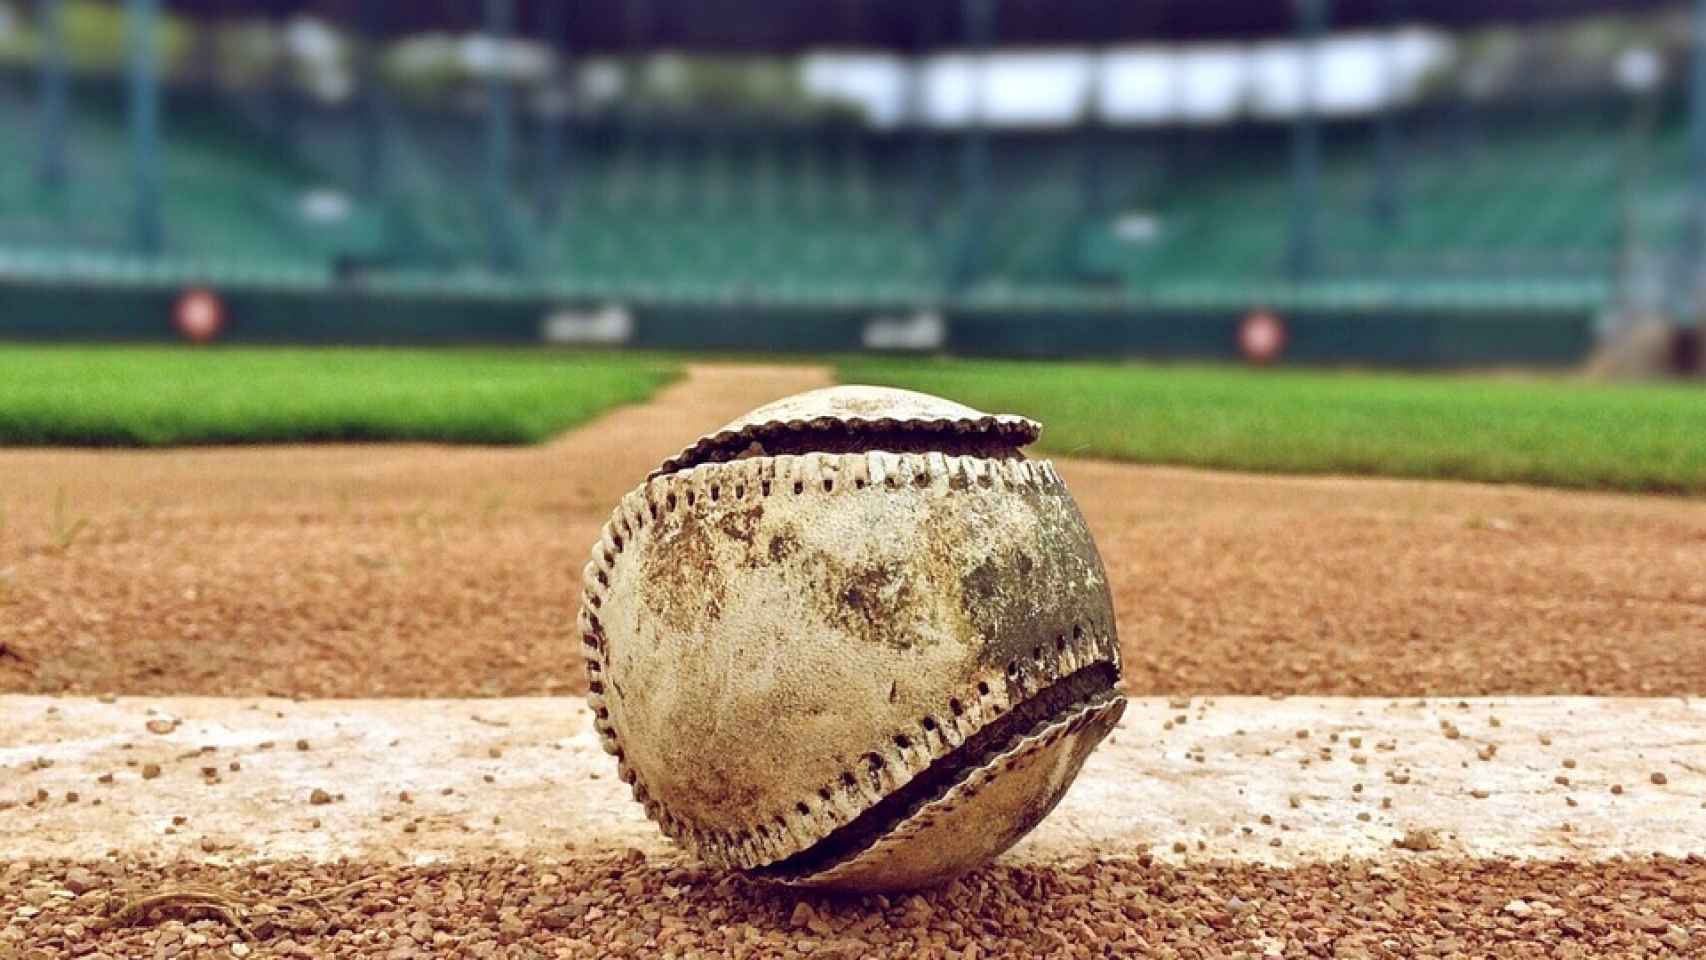 Roban una entrada de béisbol de 650 dólares tras publicar una foto en Instagram